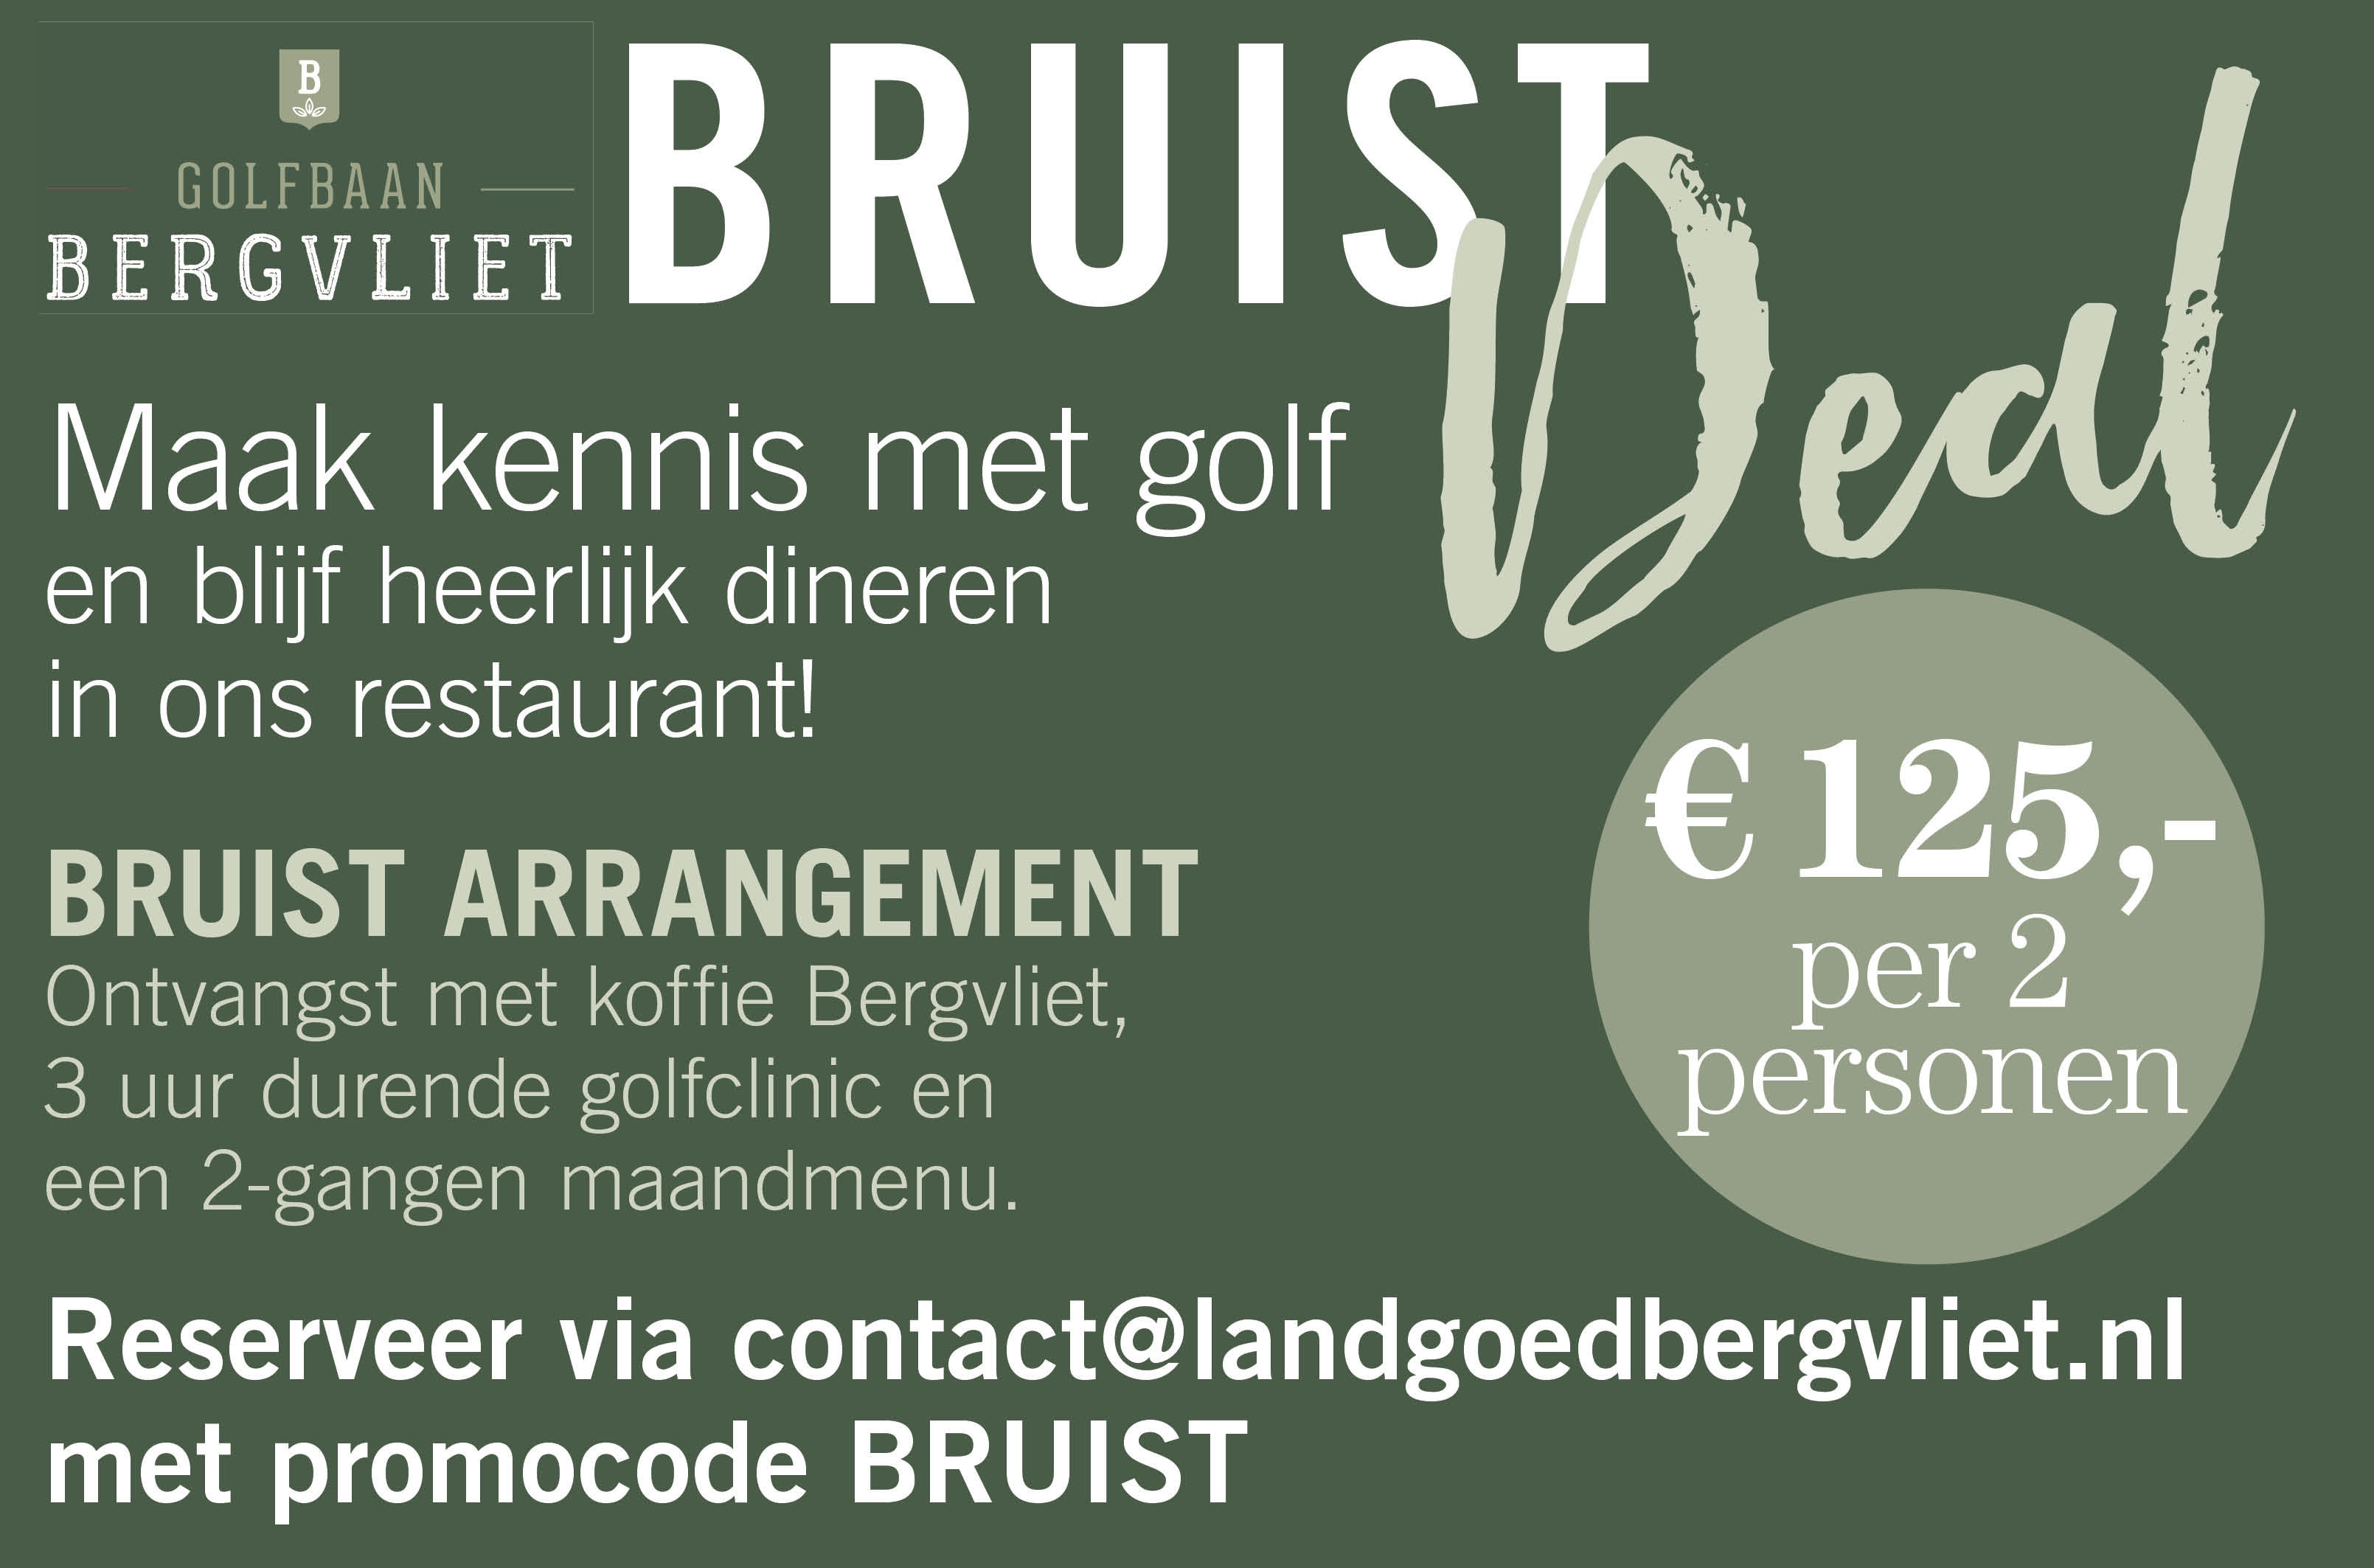 Maak kennis met golf en blijf heerlijk dineren in ons restaurant met deze Bruist Deal.